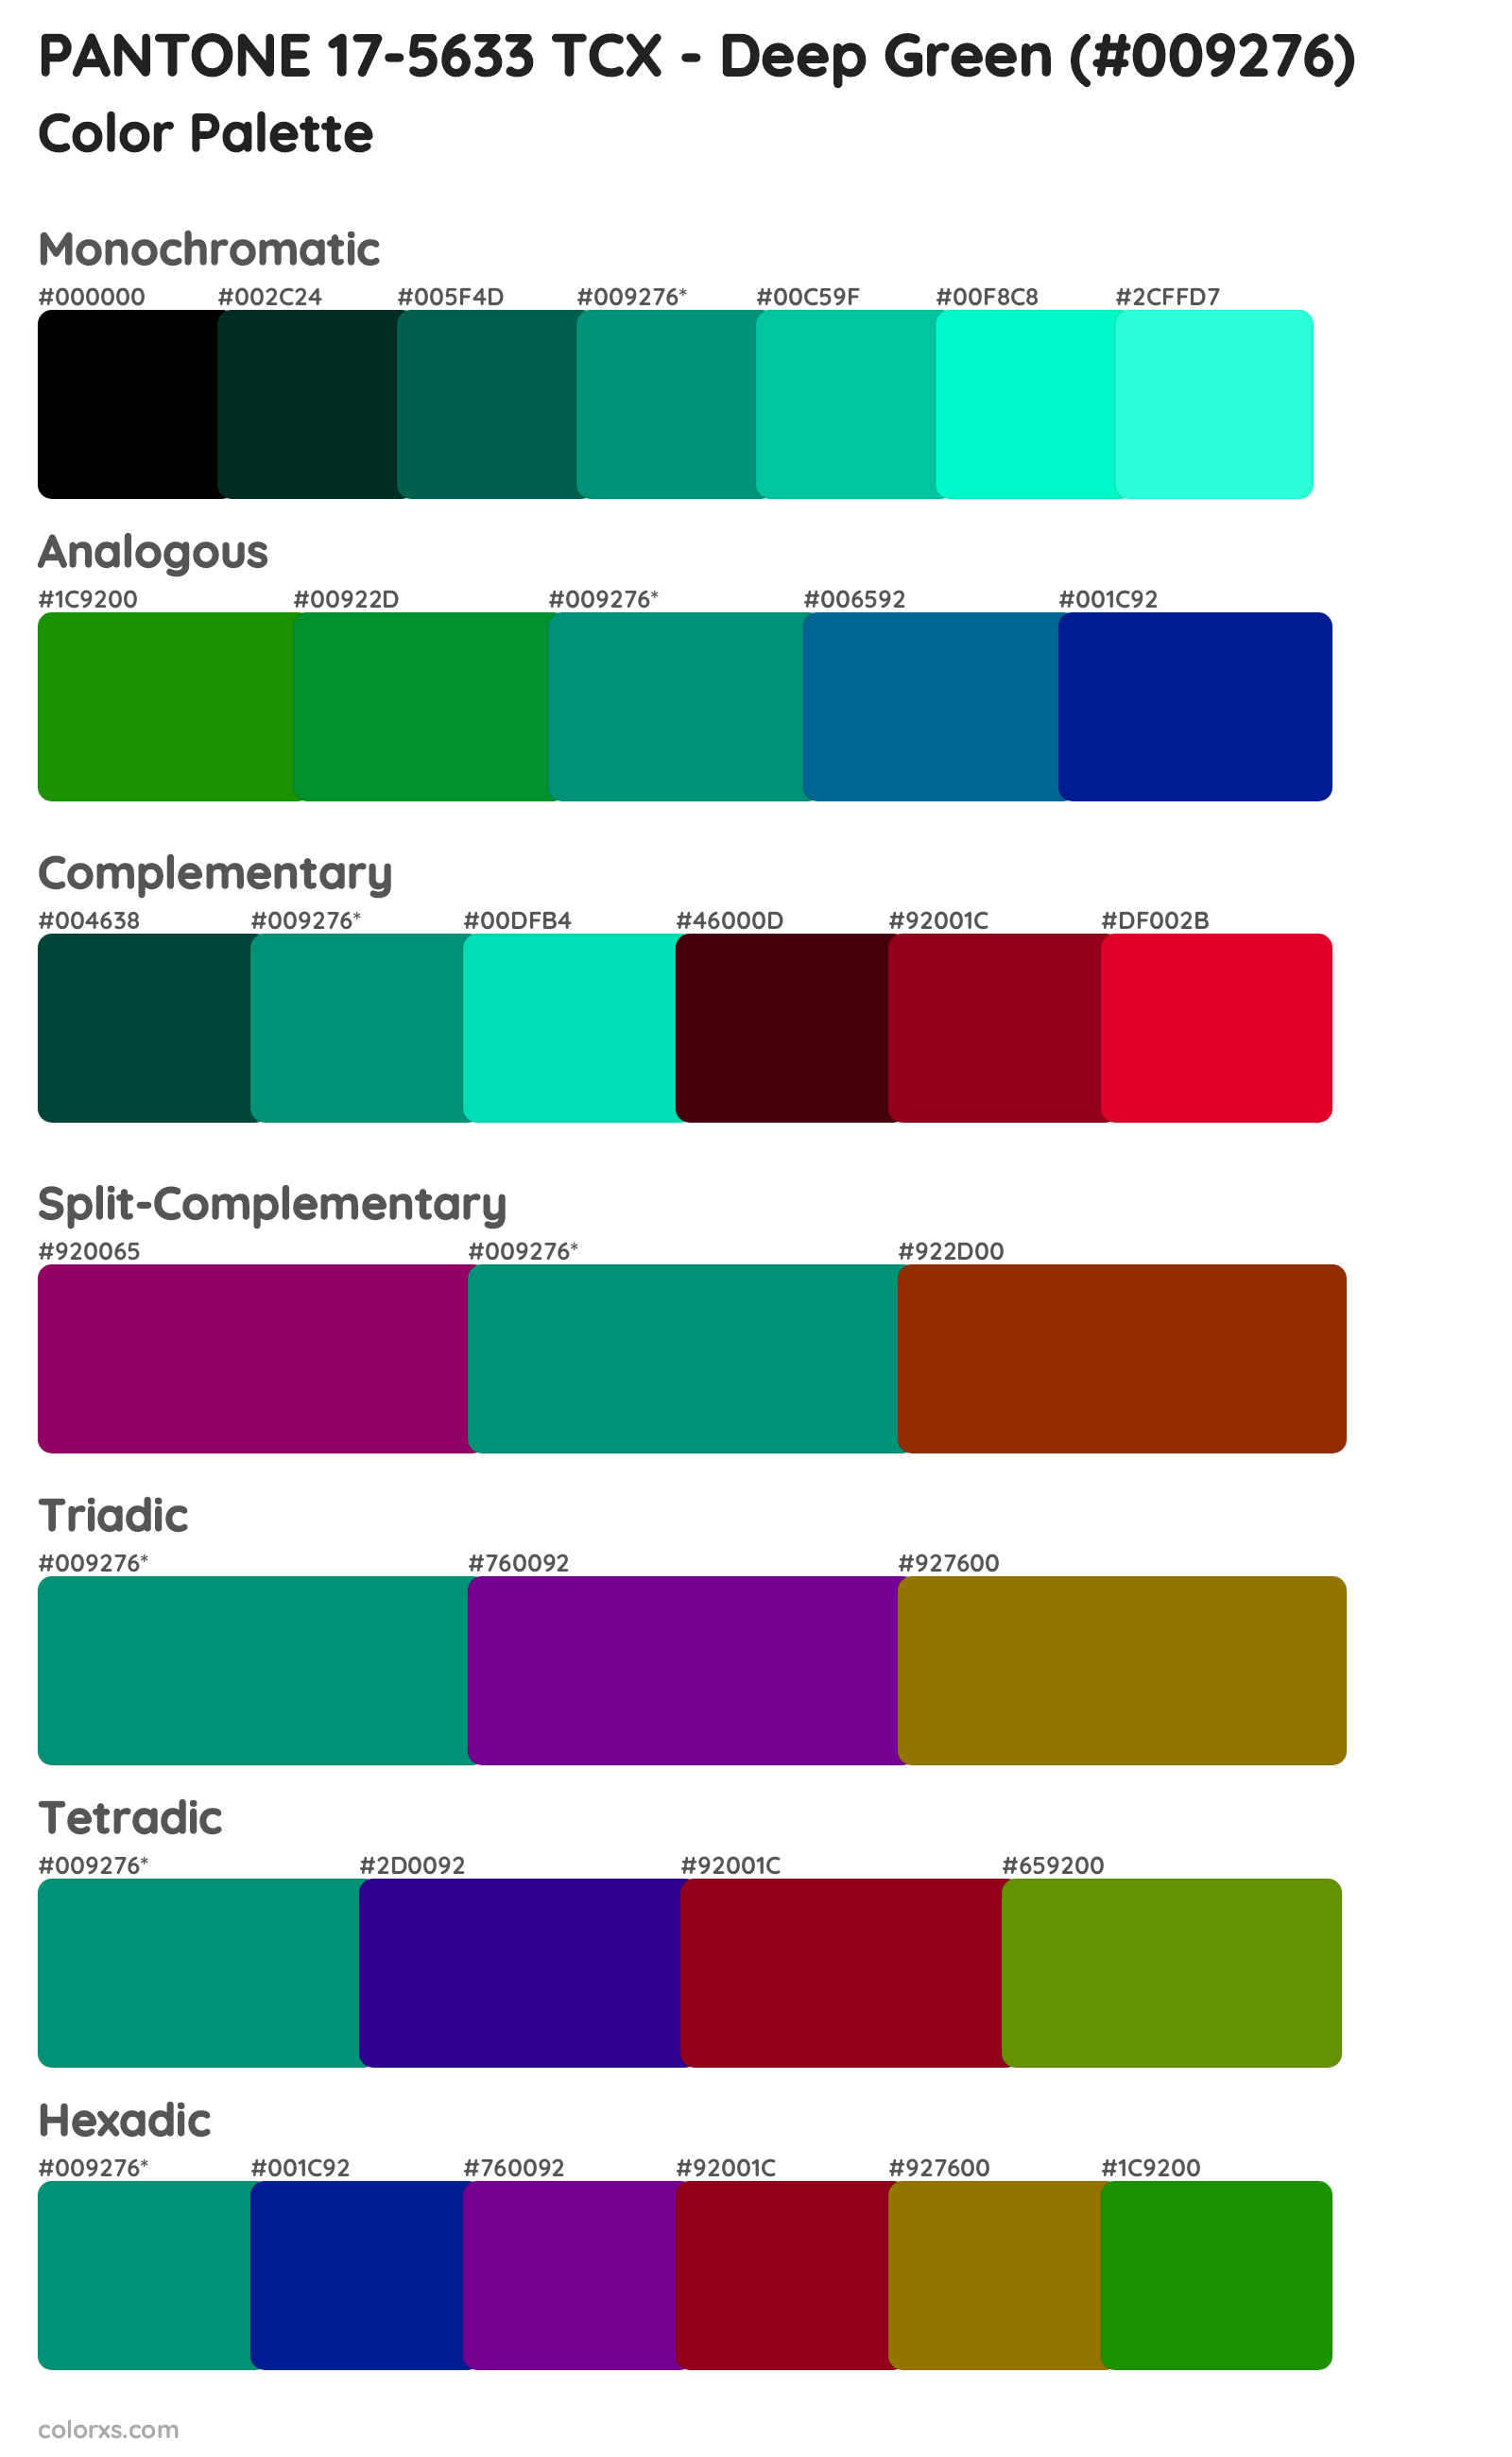 PANTONE 17-5633 TCX - Deep Green Color Scheme Palettes